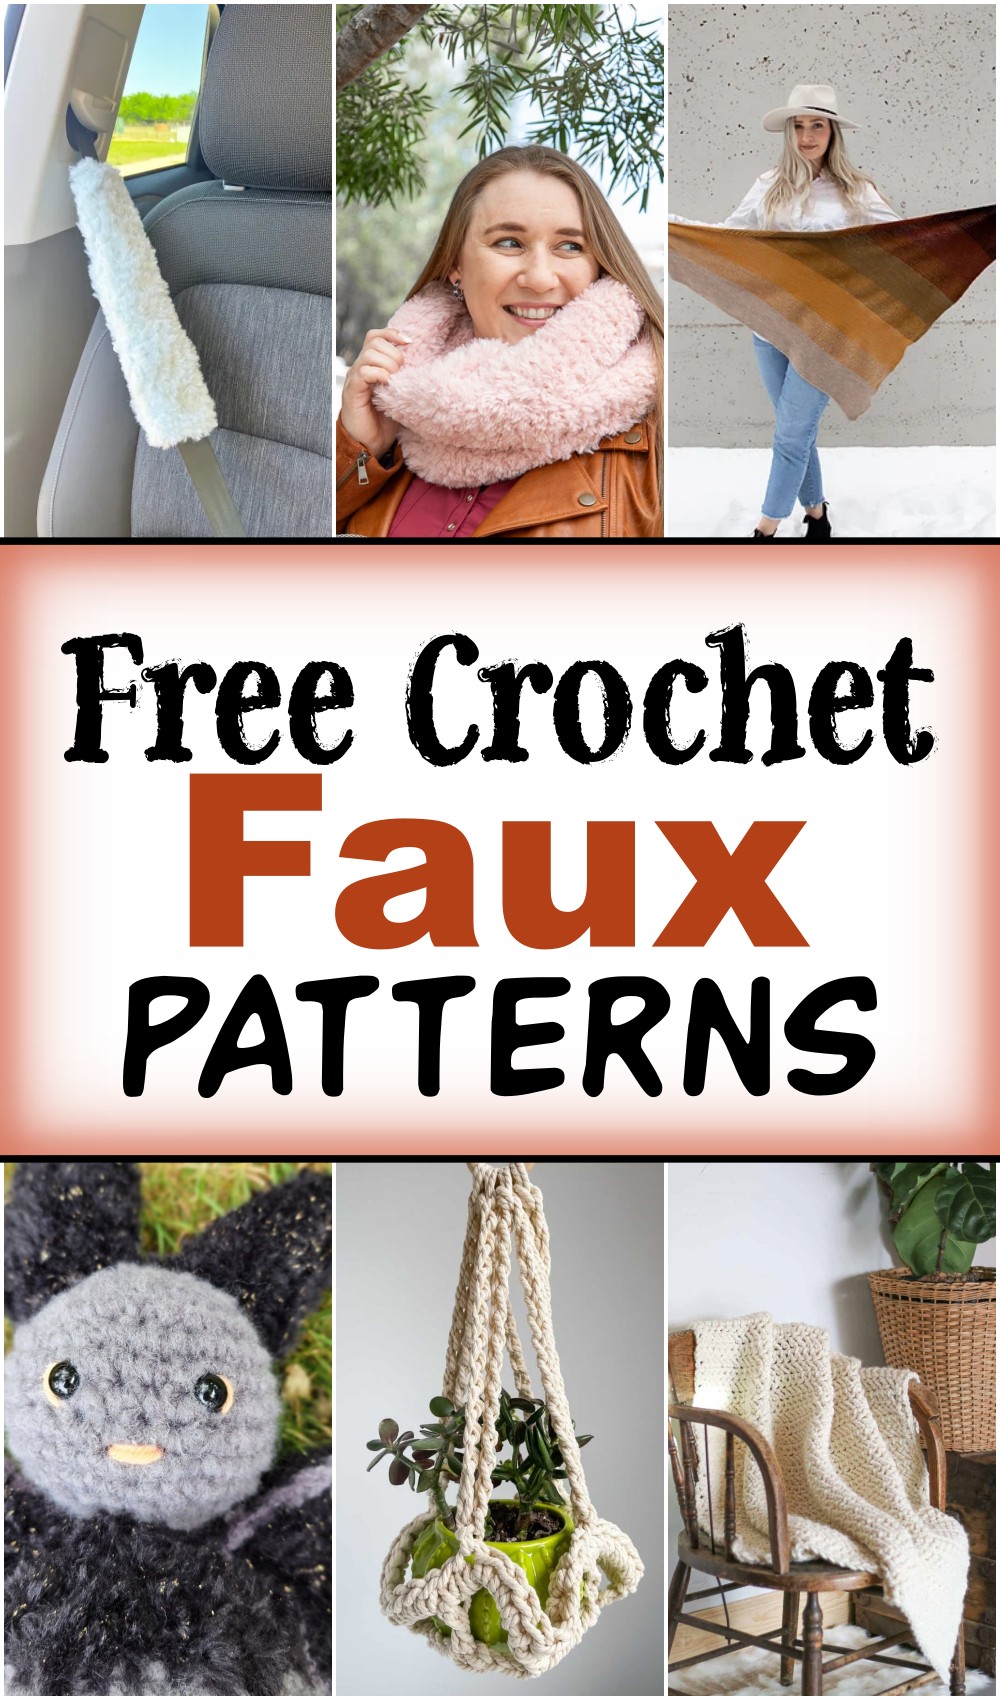 Free Crochet Faux Patterns